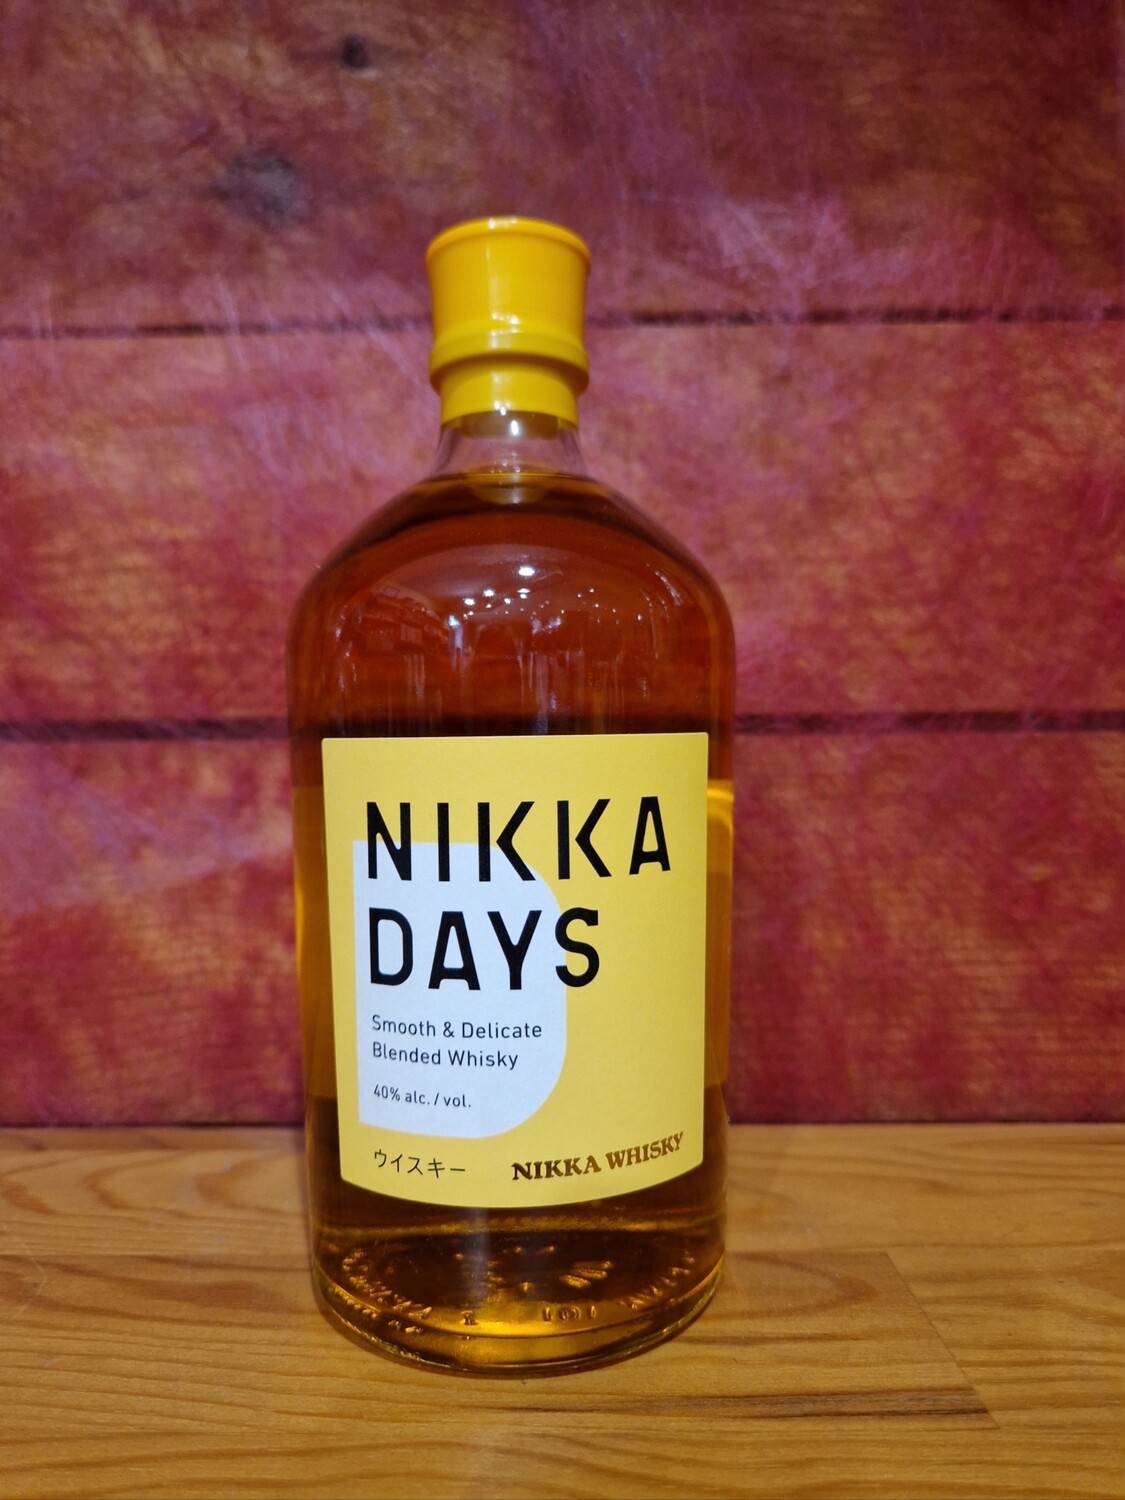 Nikka days blended whisky japonais